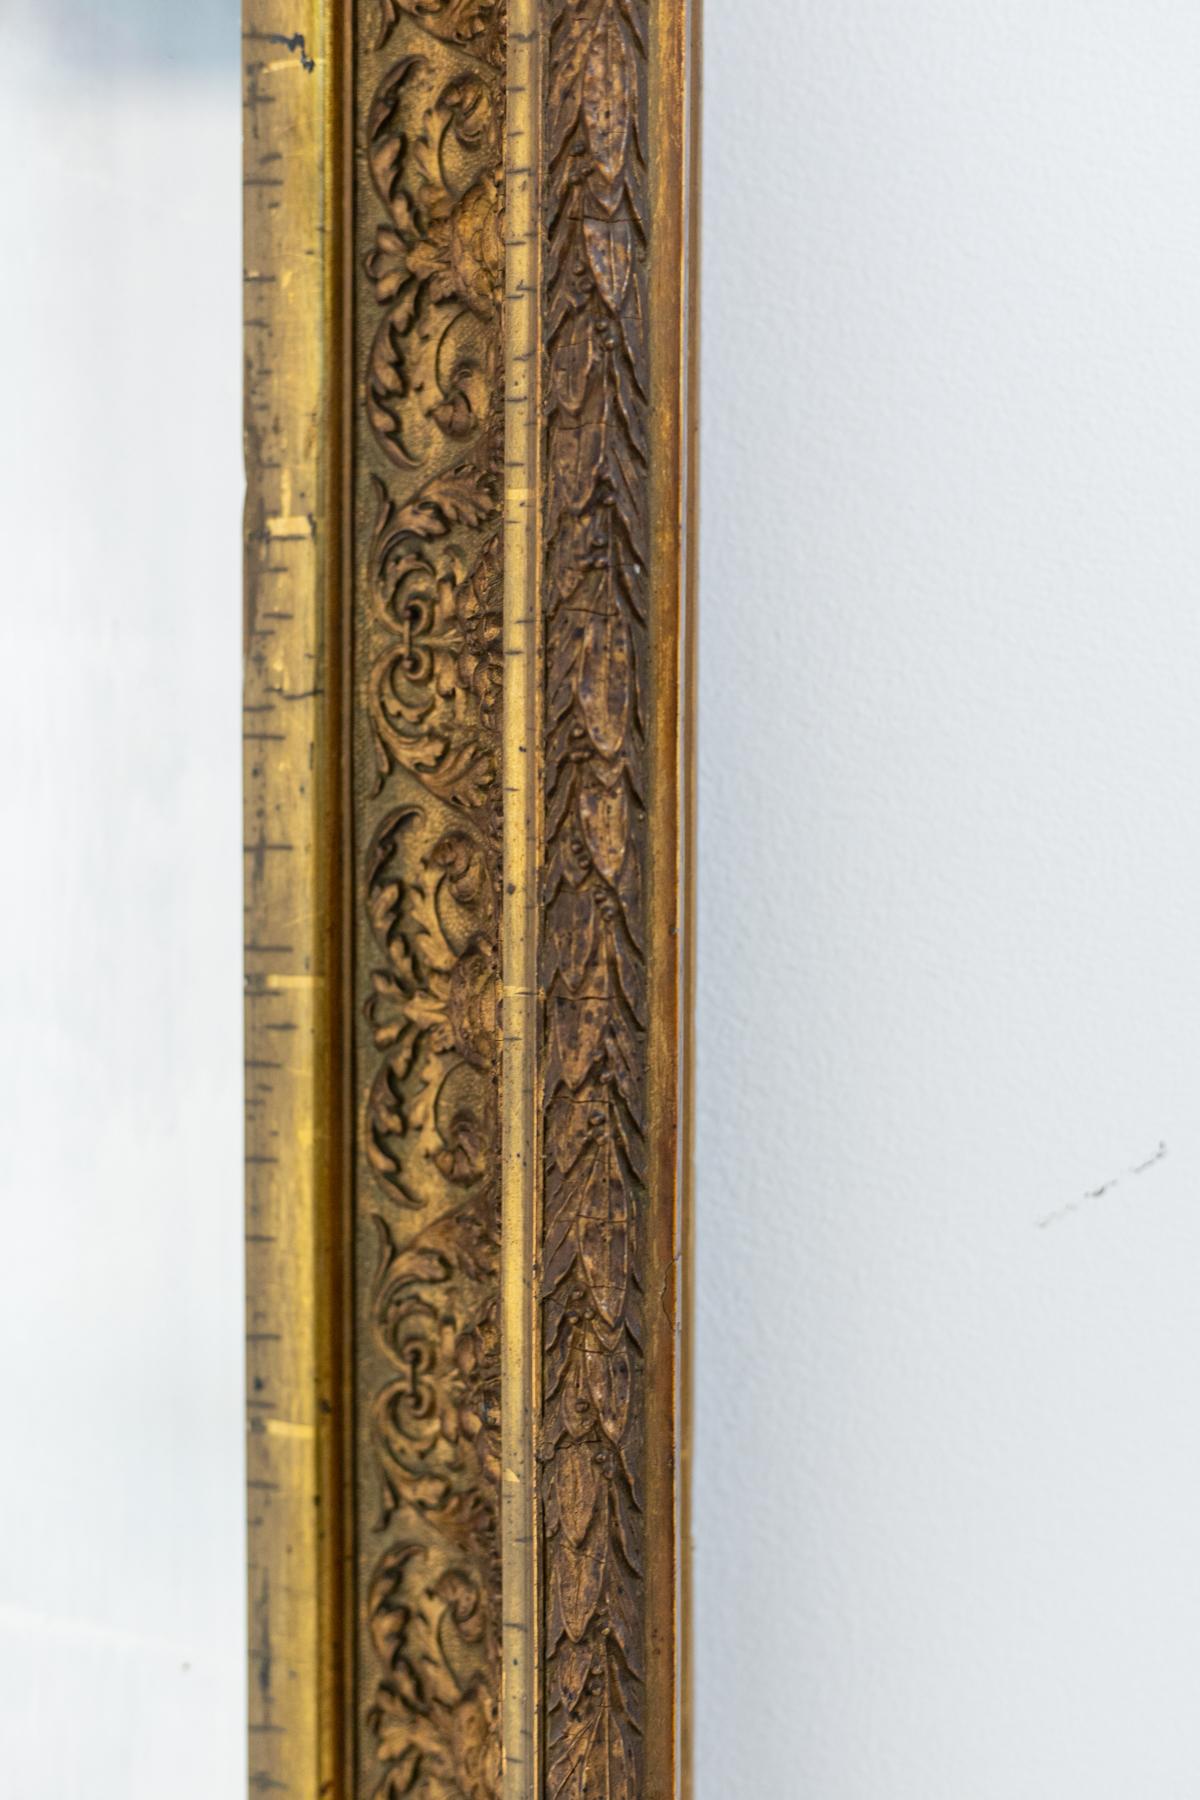 Ein schöner rechteckiger Holzspiegel, der in den 1950er Jahren entworfen und von einem sehr guten italienischen Hersteller produziert wurde.
Der Spiegel ist sehr einfach: Er hat eine typische rechteckige Form. Der Rahmen ist aus sehr schönem und